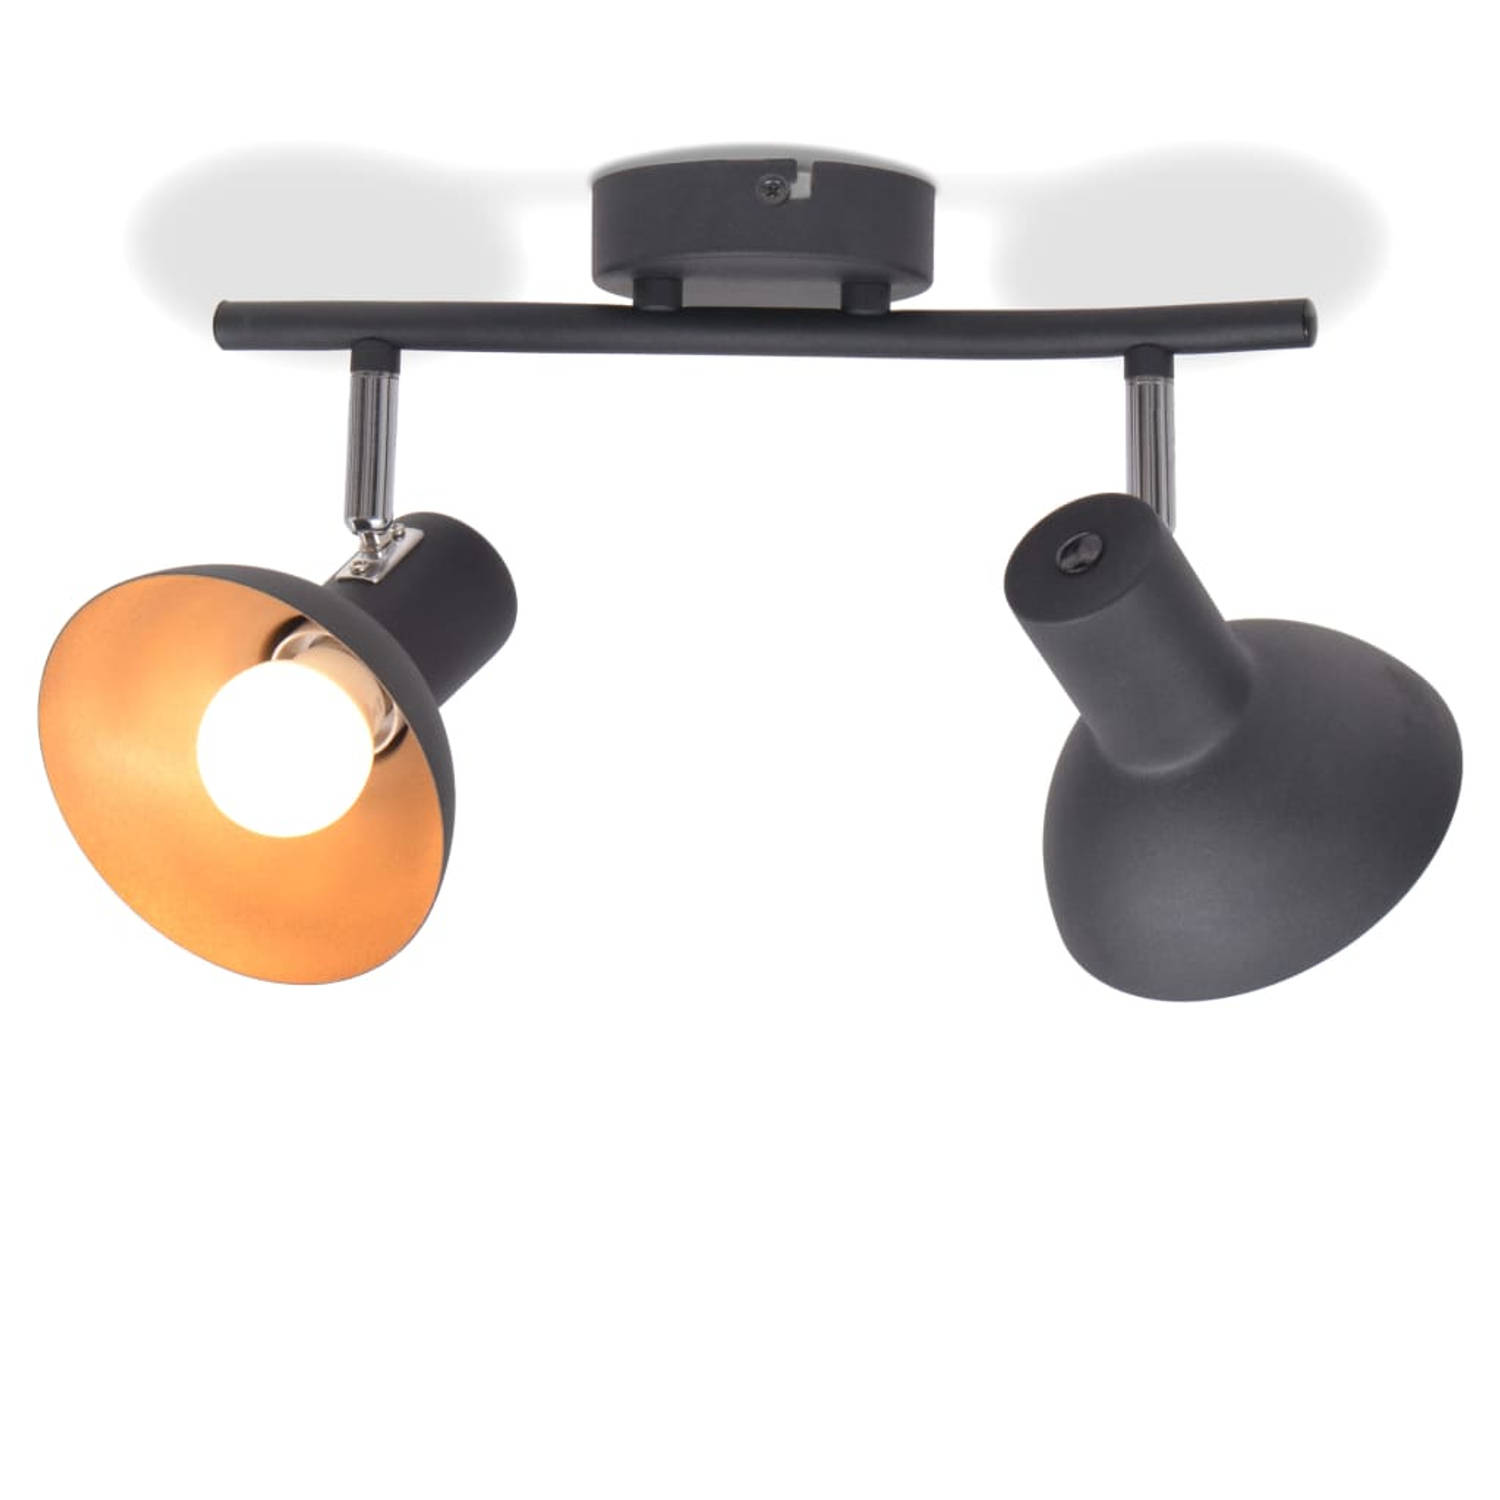 The Living Store Plafondlamp Zwart/Goud - Metalen basis - 9x2.5cm - E27 fitting - Geschikt voor 2 peertjes